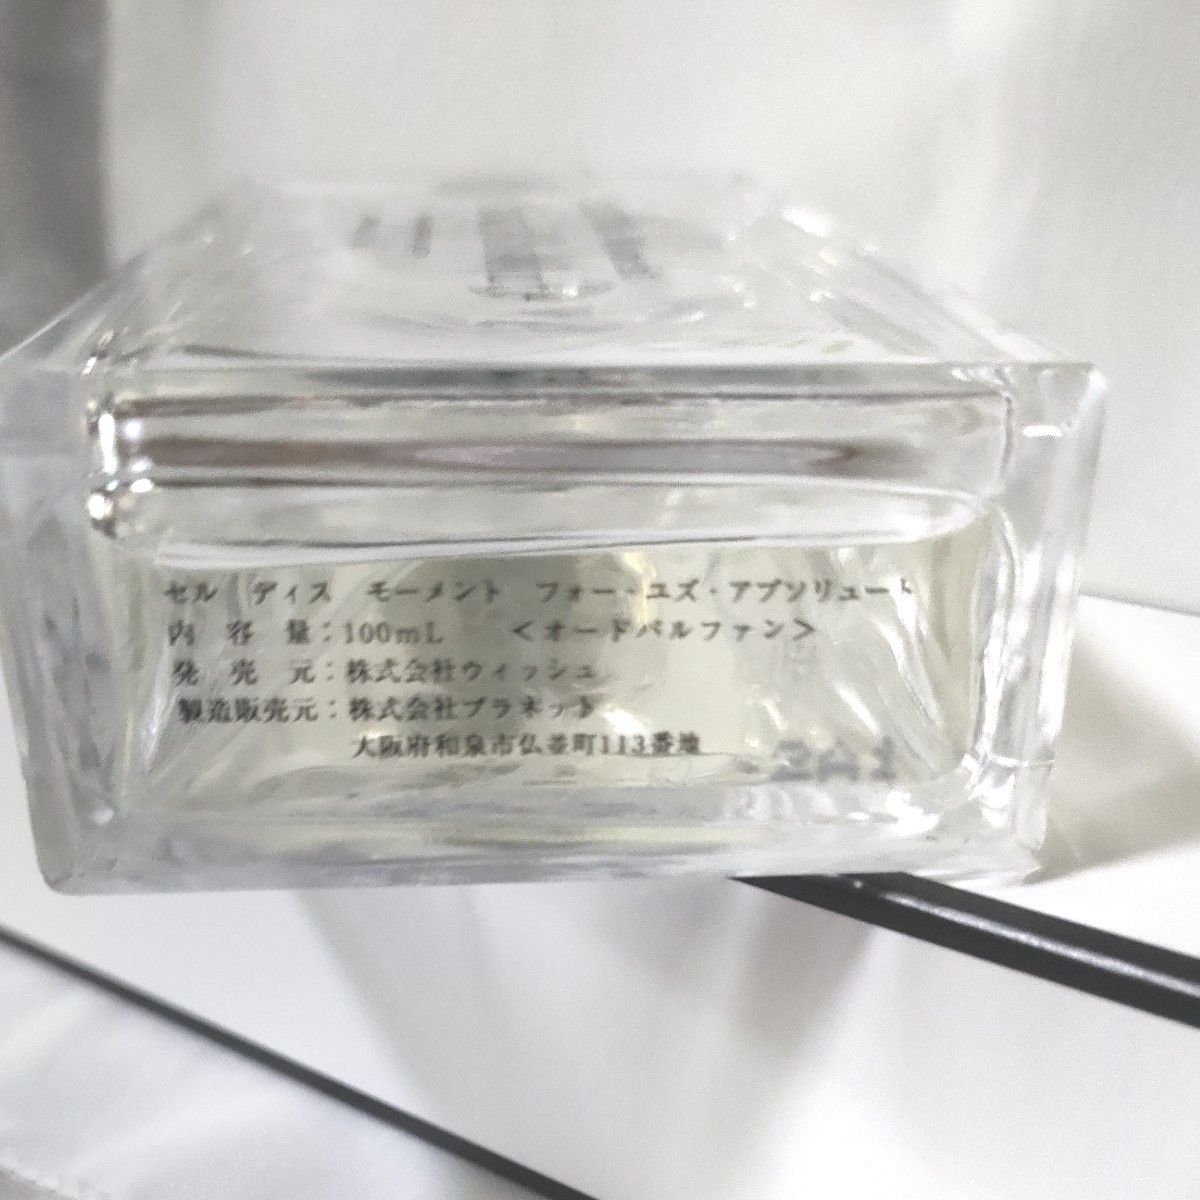 セルディスモーメント 4 ユズアブソリュート100ml   フルボトル残量表示　EDP  日本製 　 